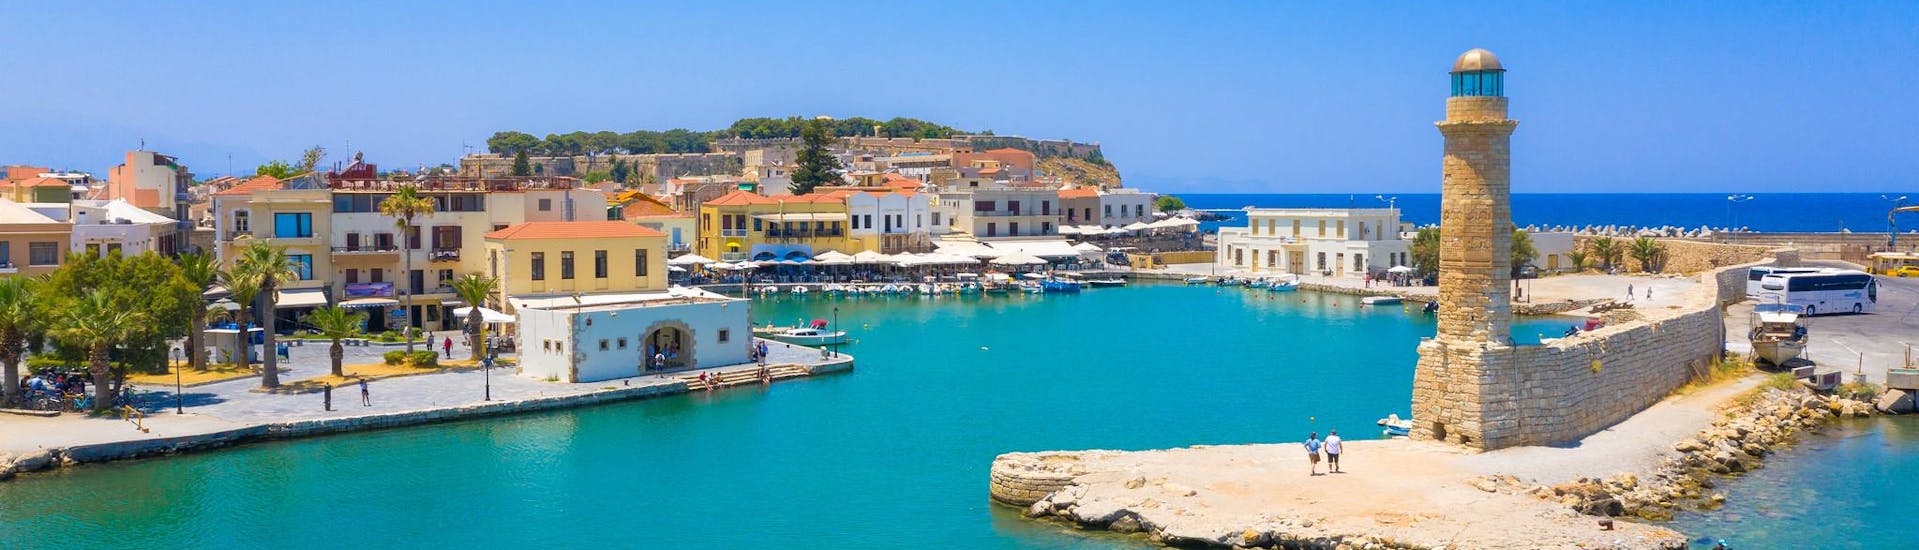 Blick auf den alten venezianischen Hafen von Rethymno, ein wunderbarer Ausgangspunkt für Bootsausflüge auf Kreta.